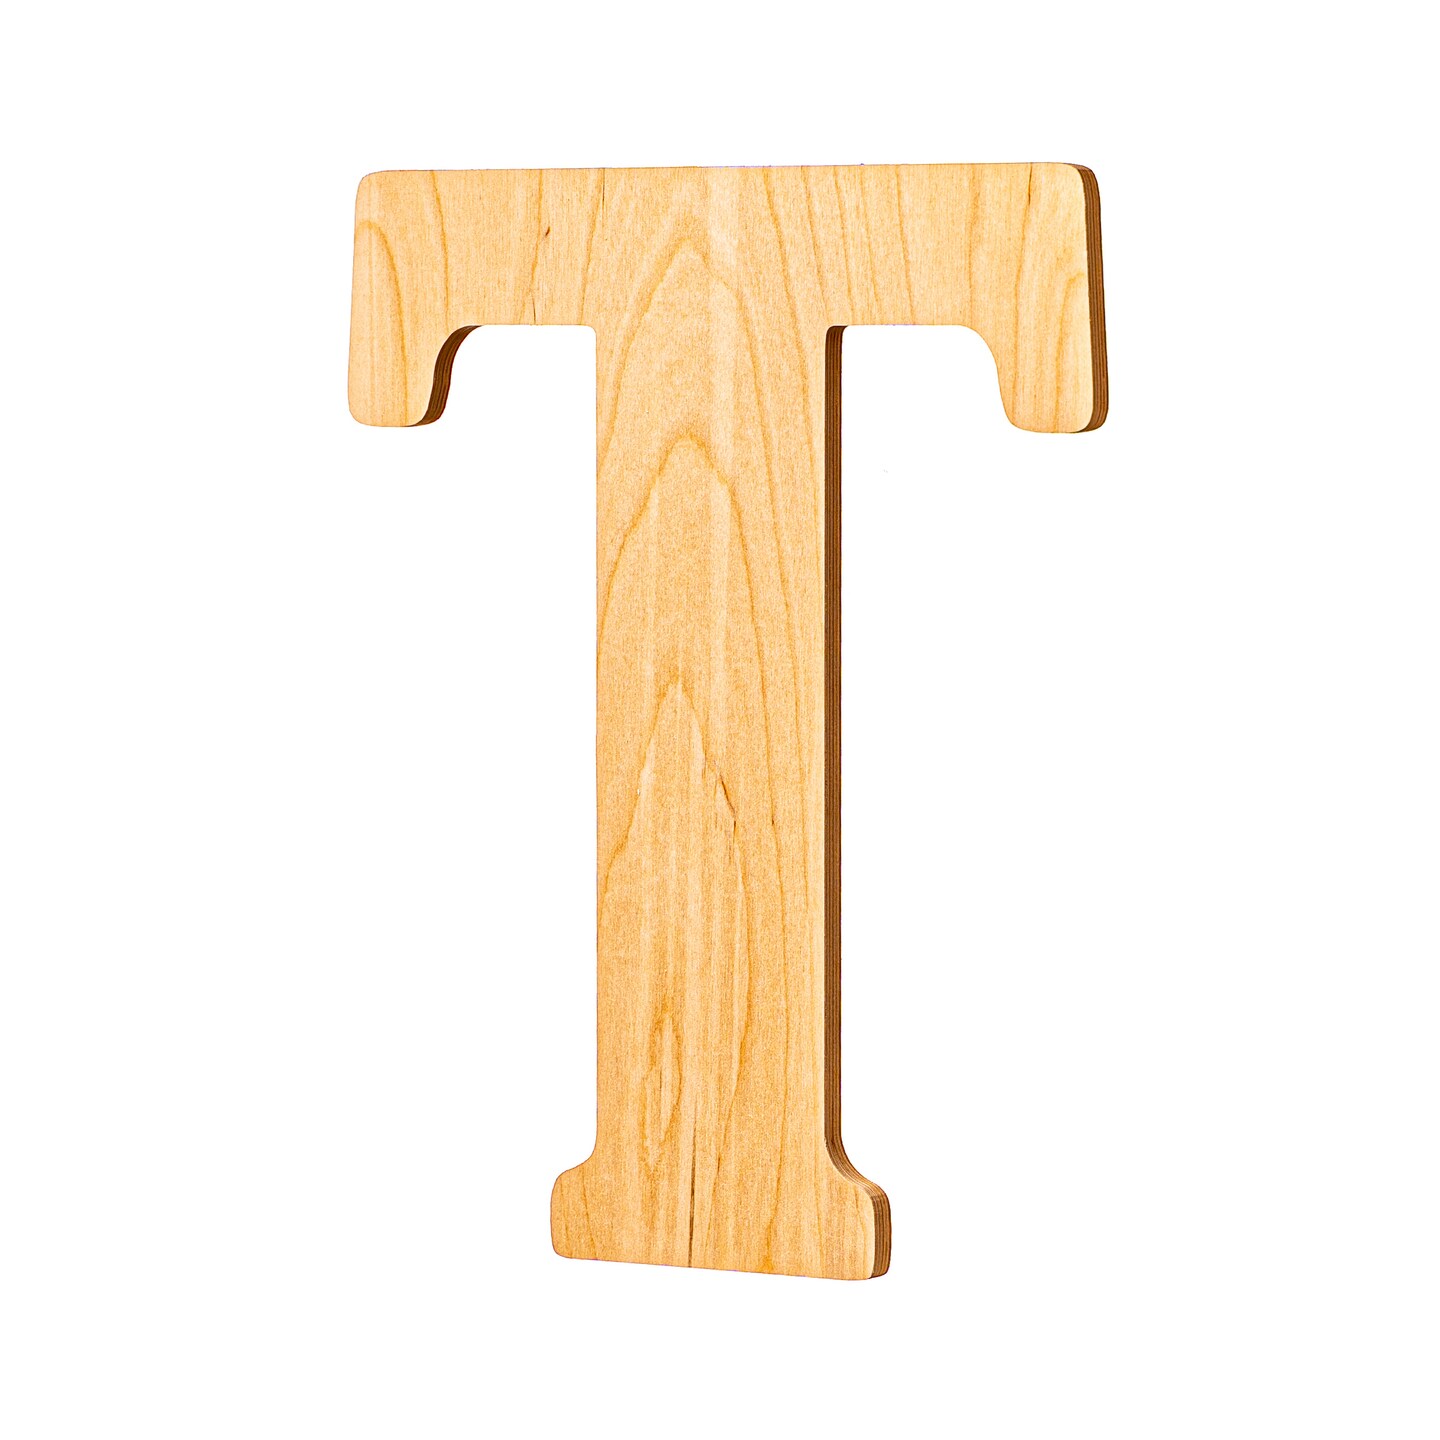 23 In. Letter T, Unfinished Vintage Wood Letter (T)